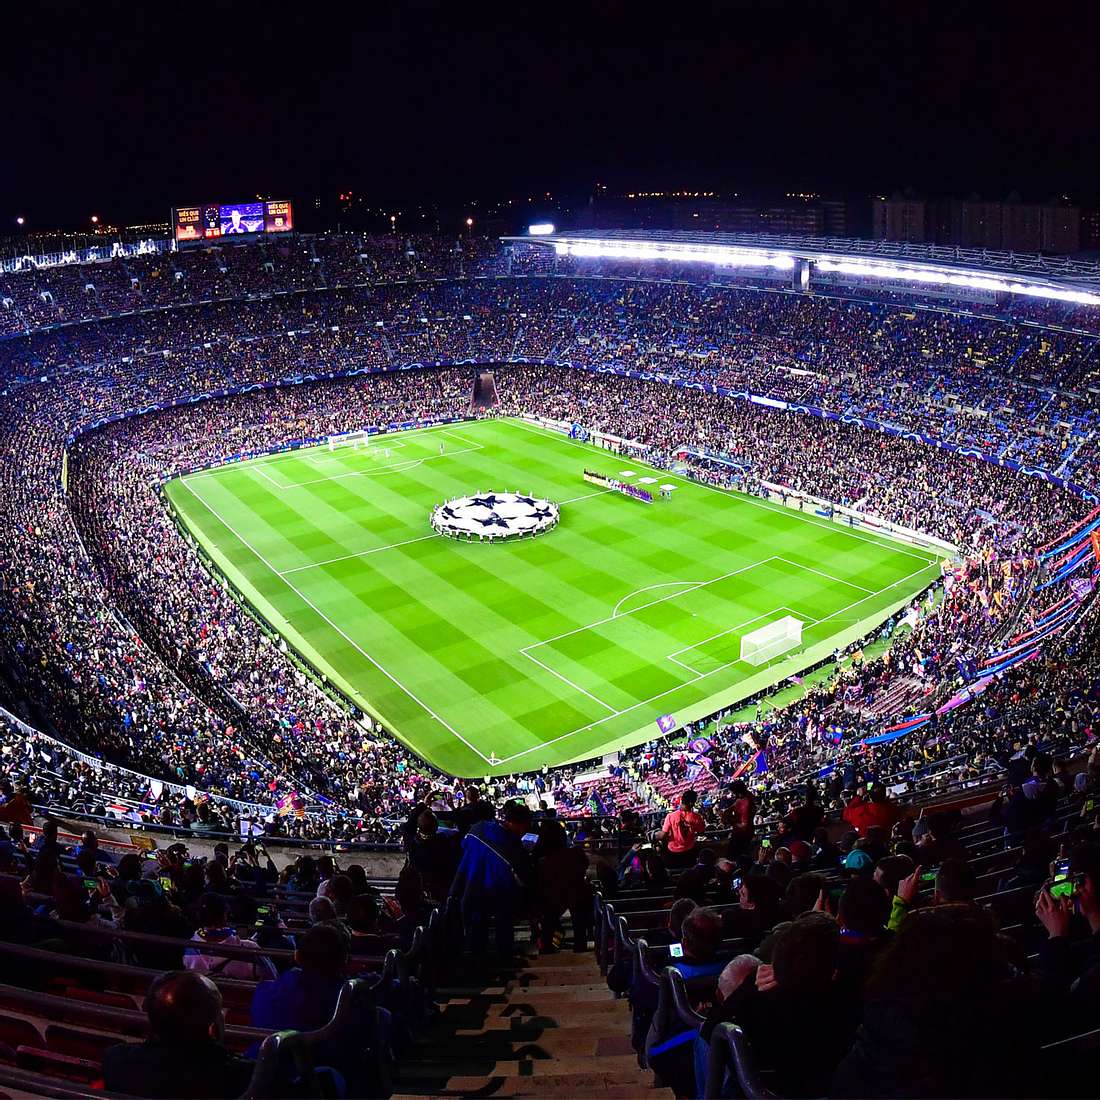 Das Camp Nou ist das beliebteste Stadion auf Instagram